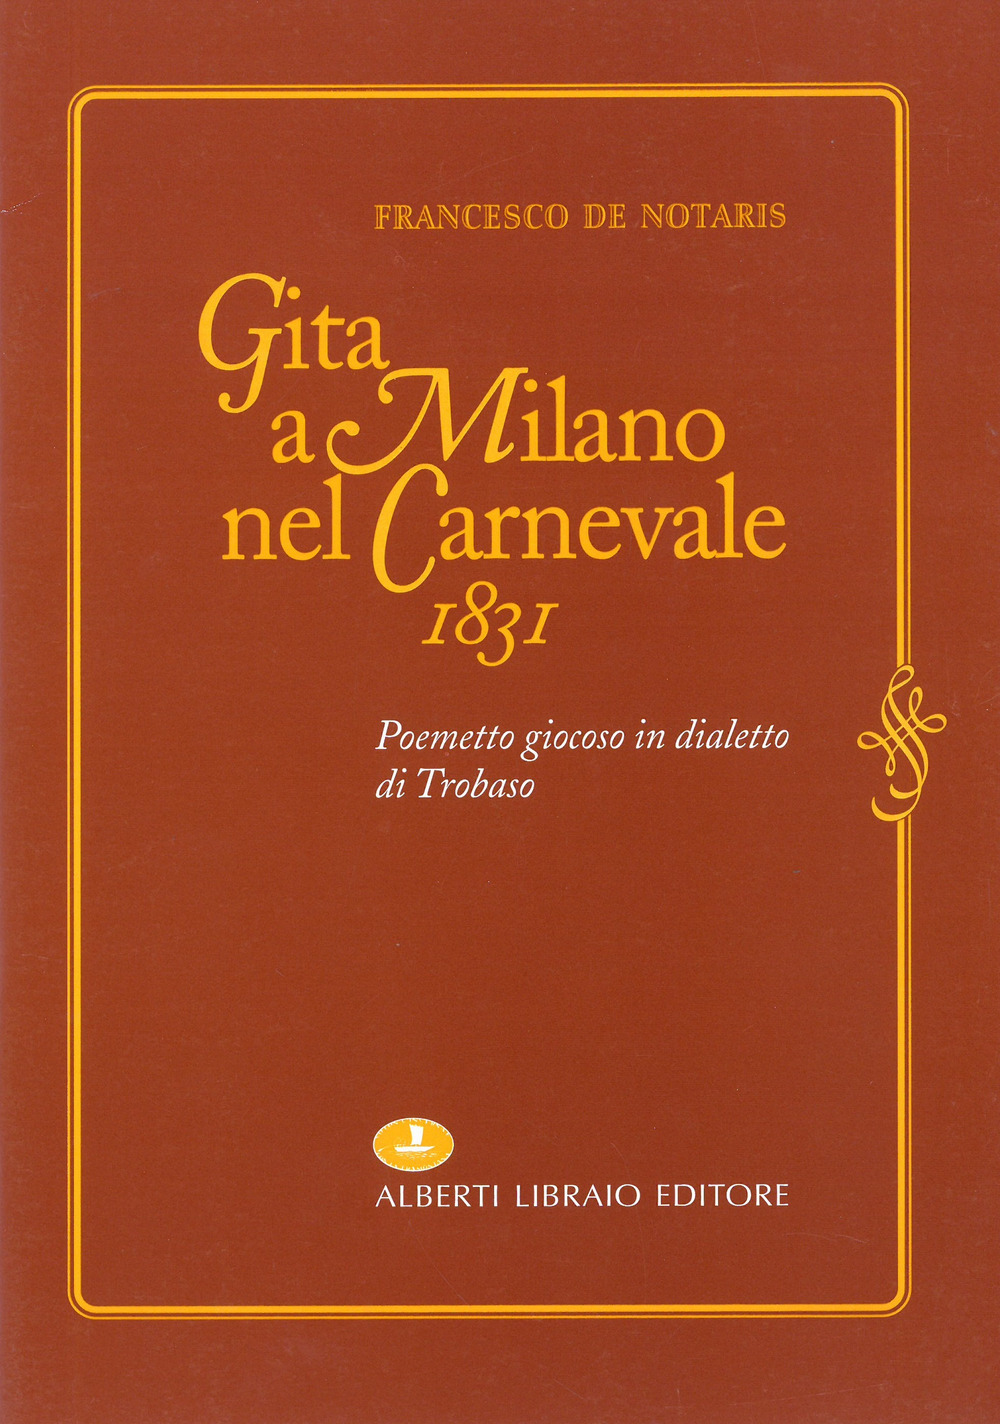 Gita a Milano nel carnevale 1831. Poemetto giocoso in dialetto di Trobaso